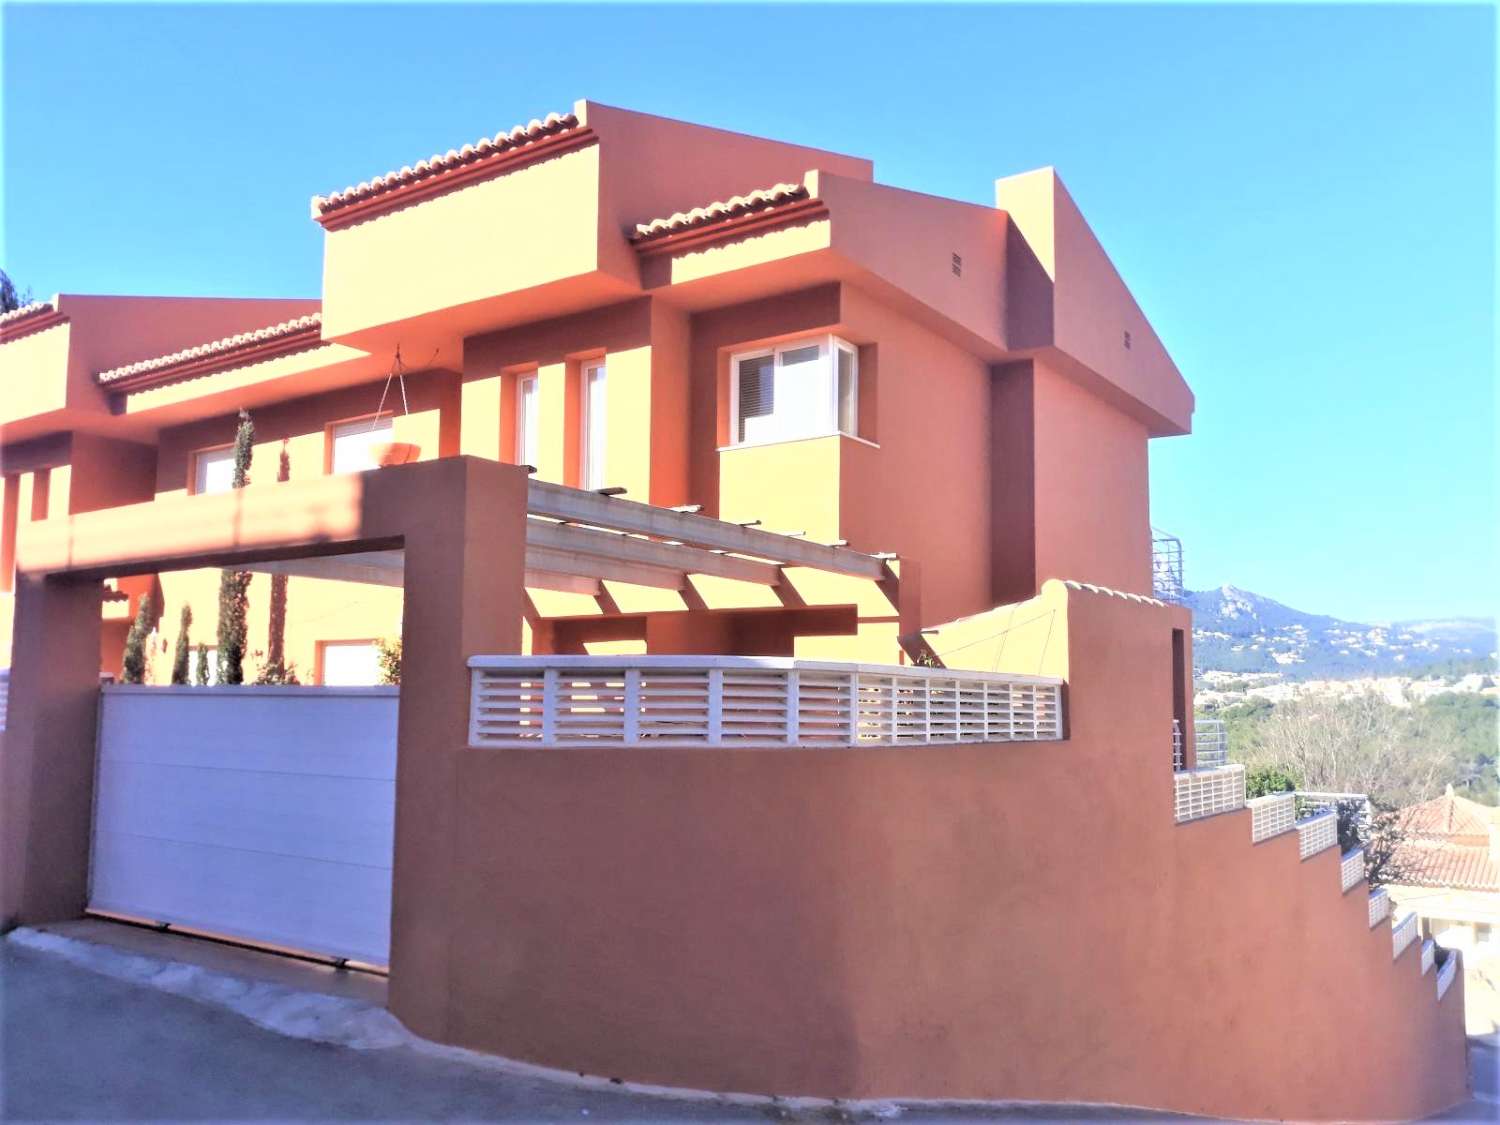 Villa mit 4 Doppelzimmern, Keller, Pool und ganz in der Nähe aller Dienstleistungen in Calpe (Costa Blanca)